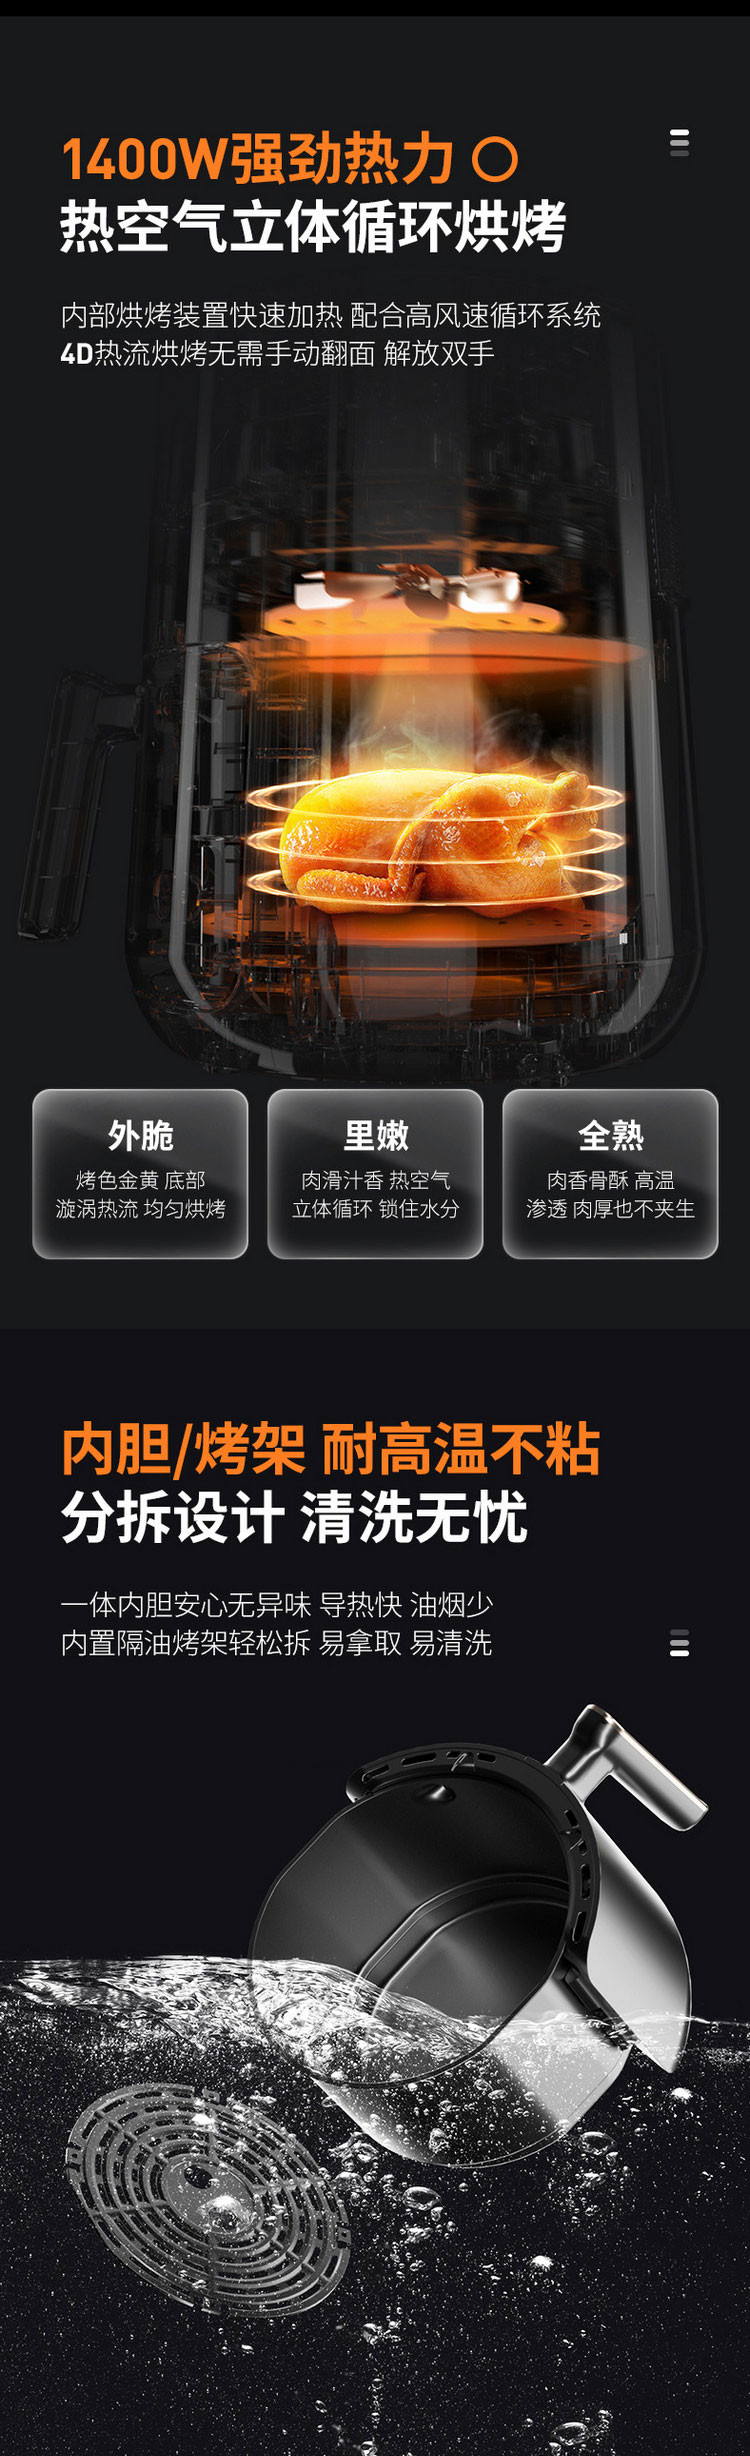 九阳/Joyoung 空气炸锅家用4.5L大容量多功能全自动智能预约电炸锅薯条机KL45-VF505